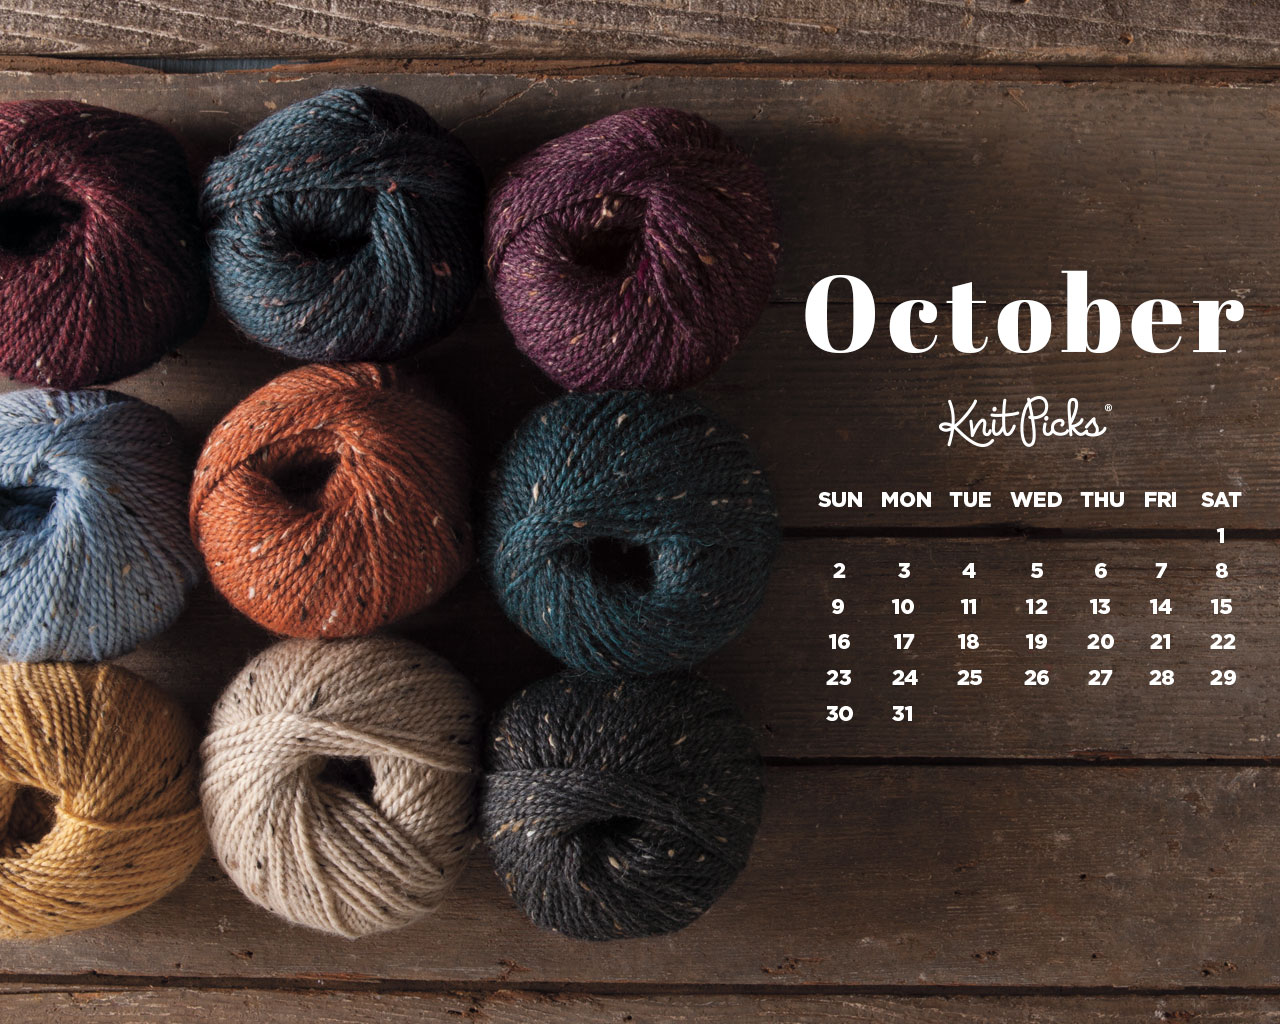 October 2016 Calendar KnitPicks Staff Knitting Blog